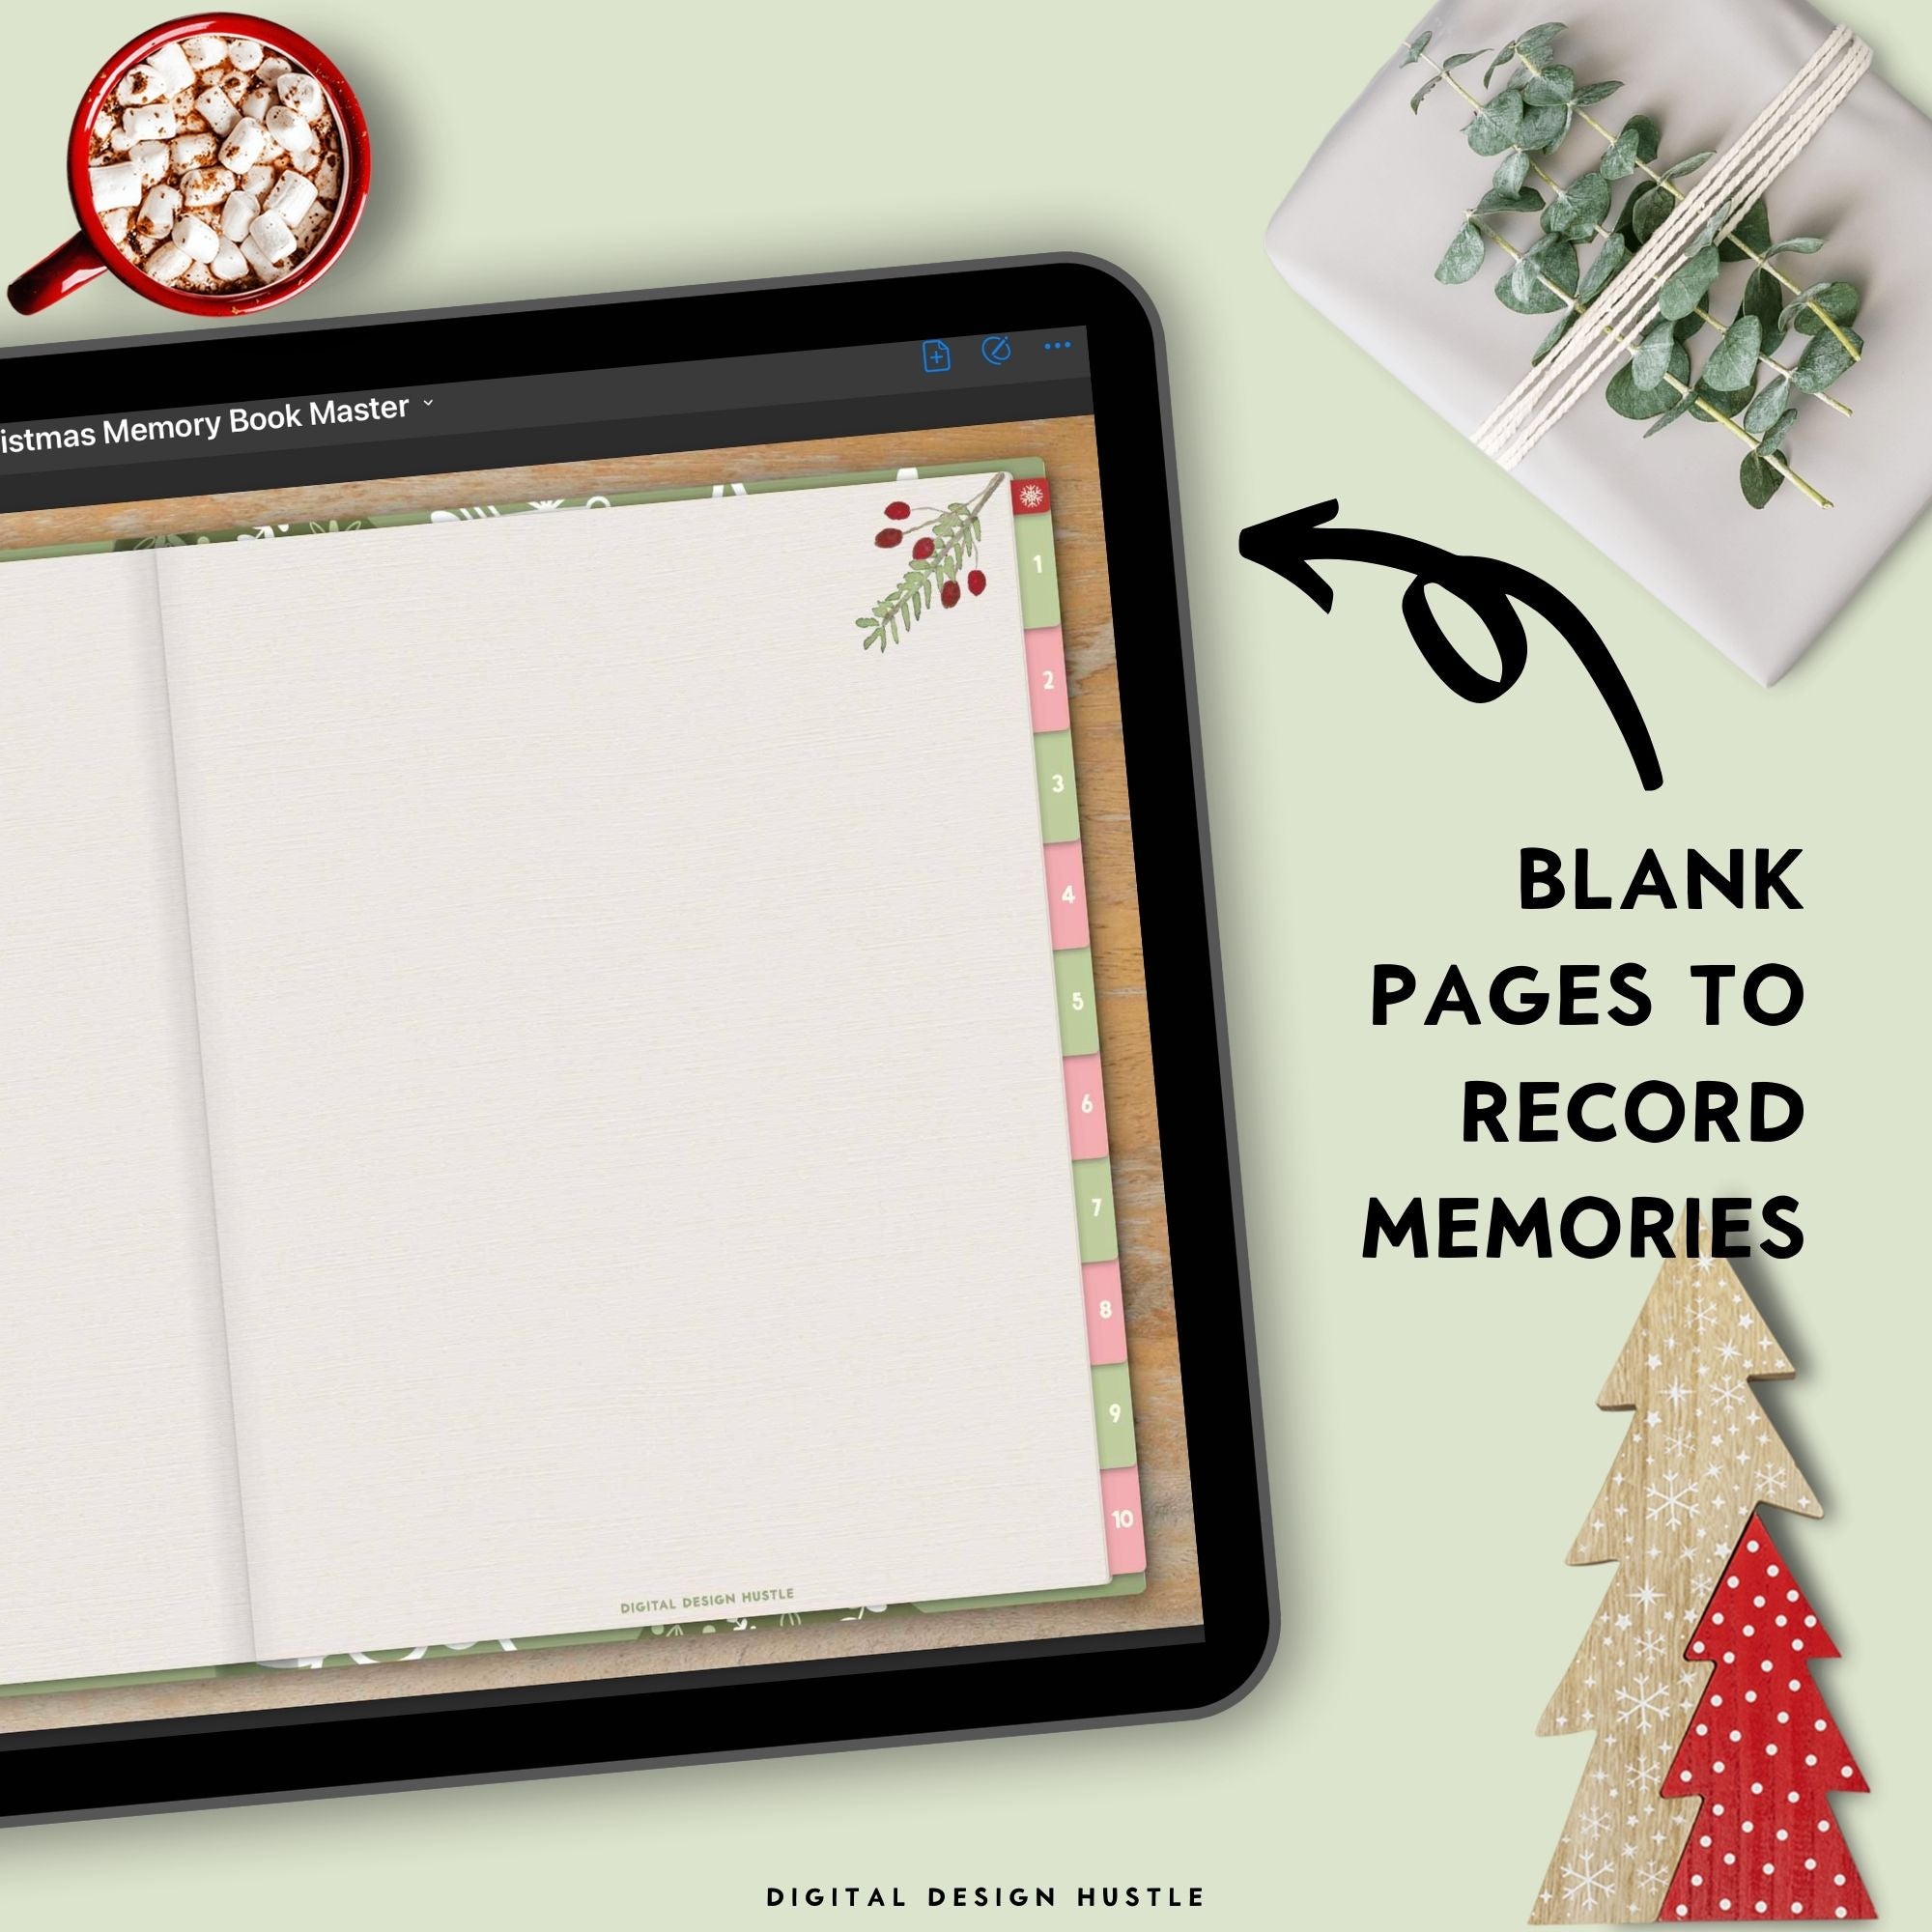 Christmas Digital Memory Book